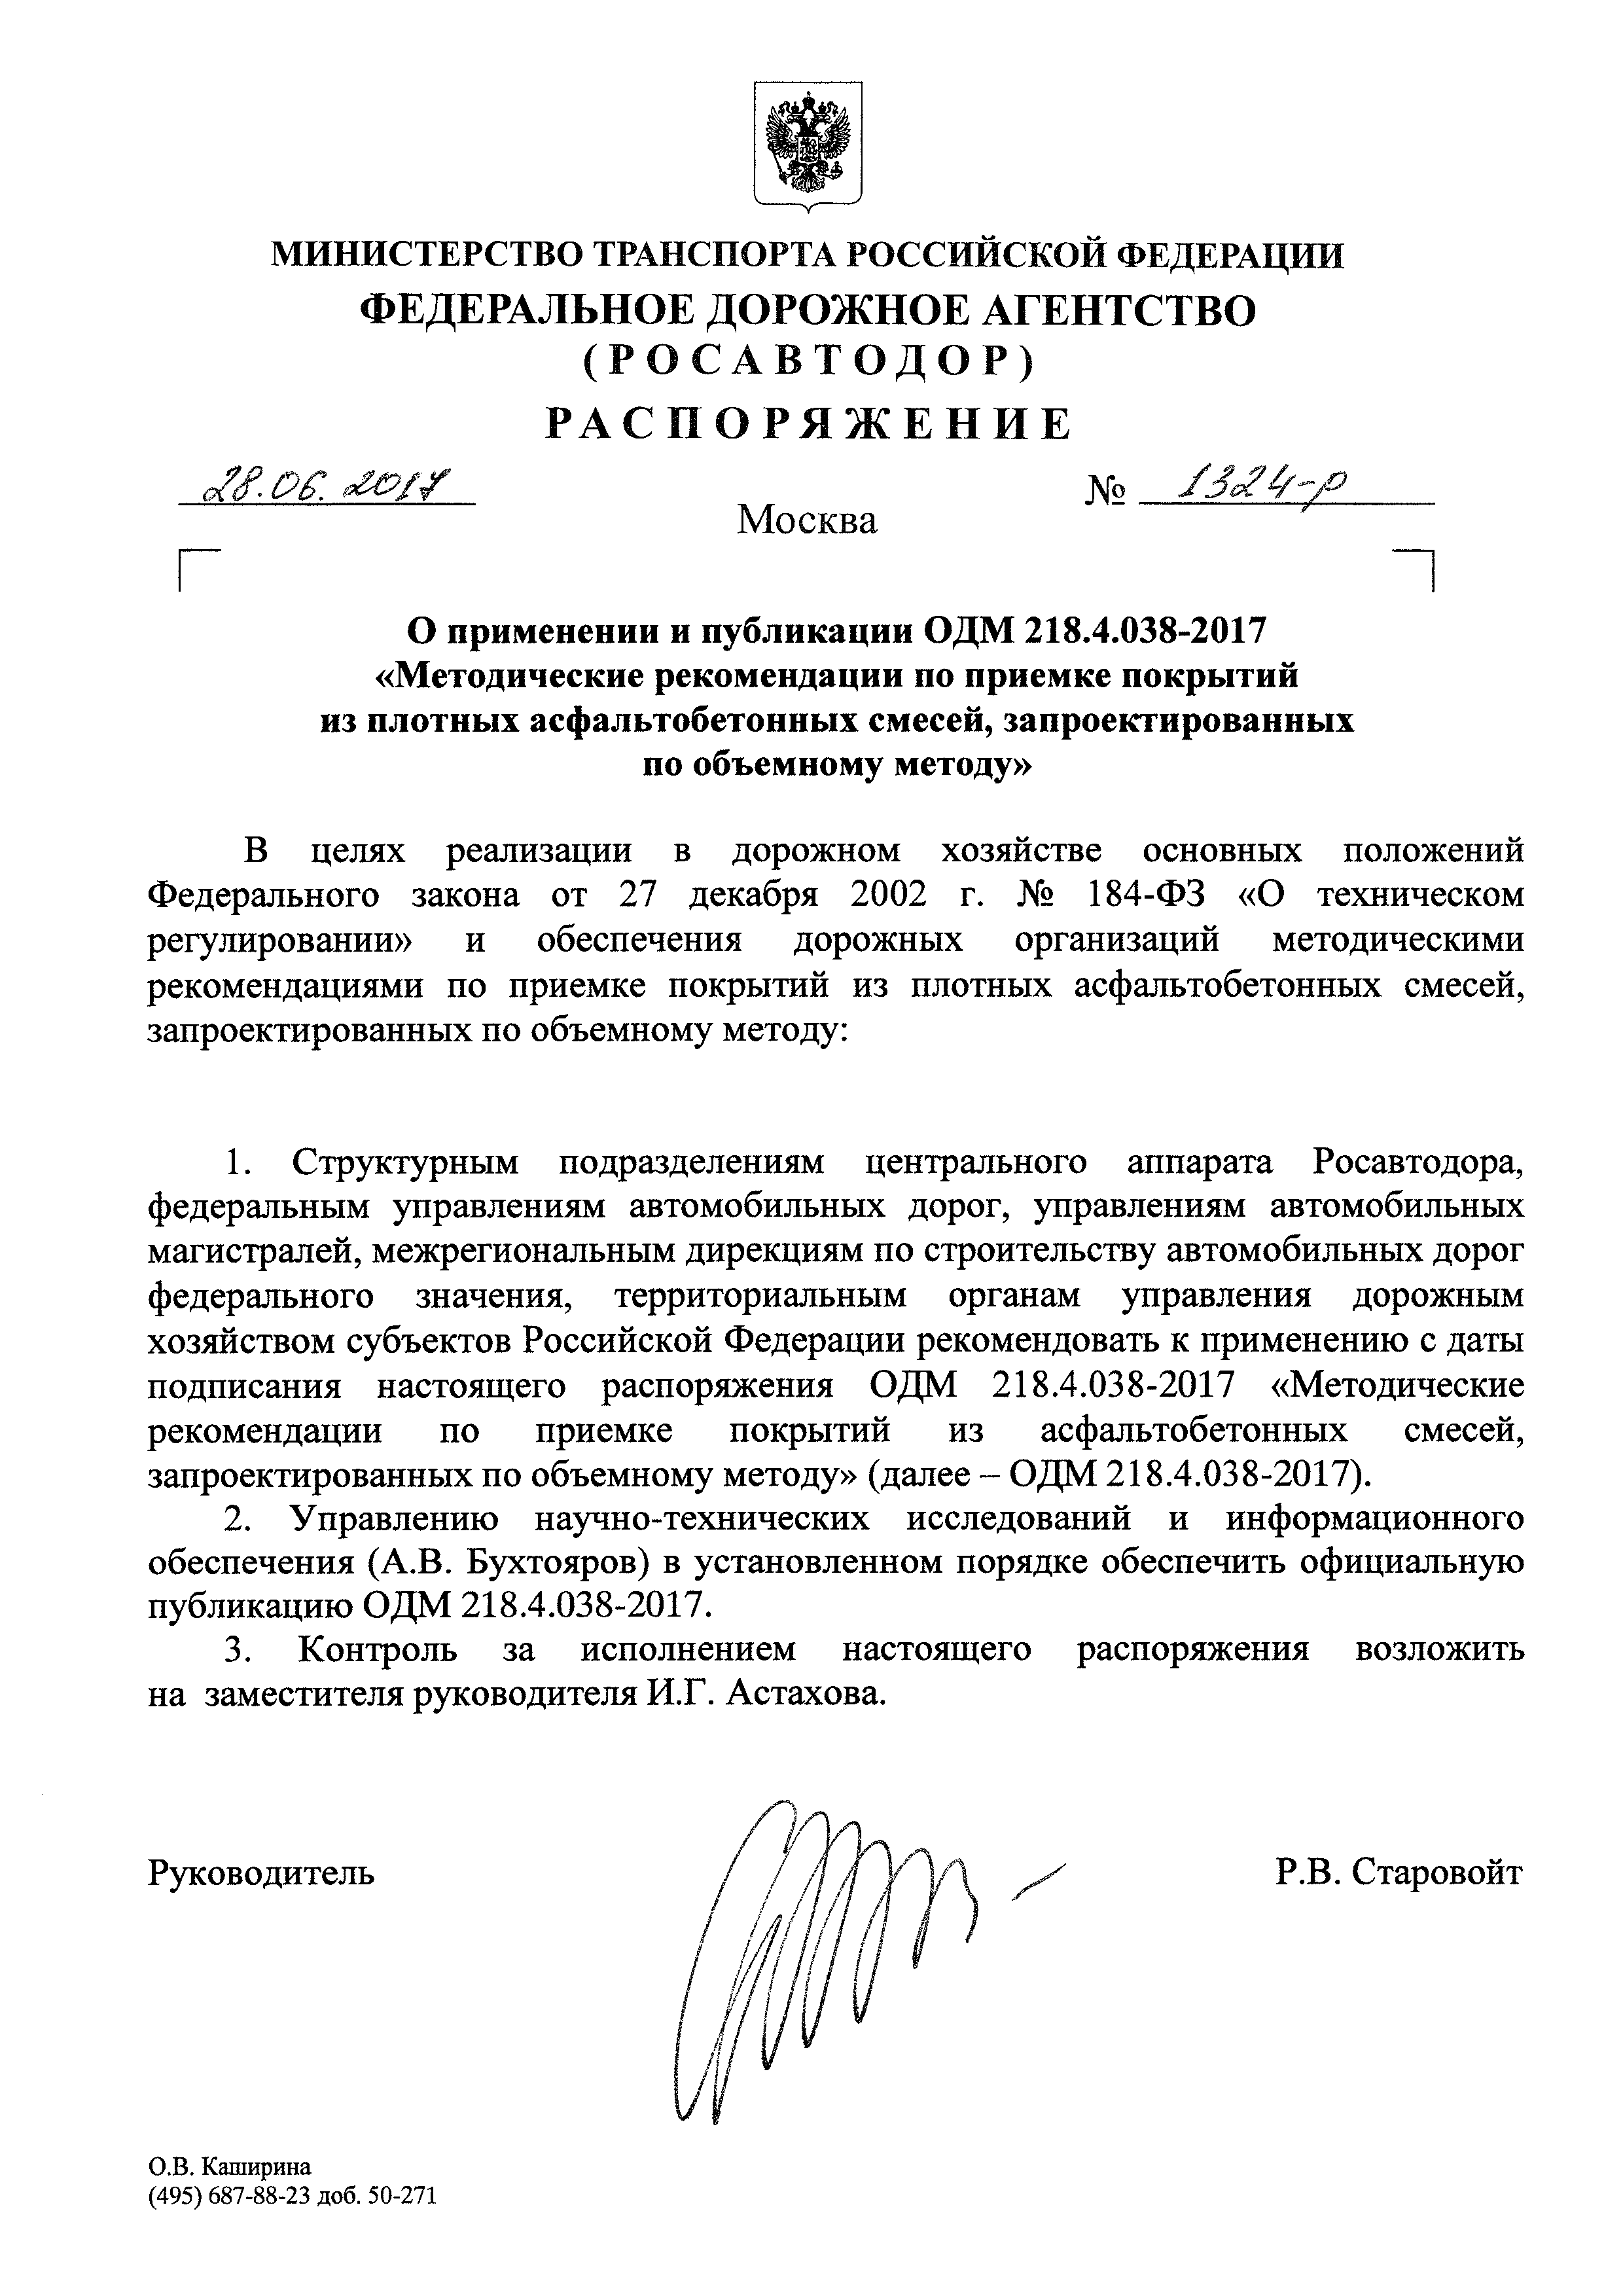 ОДМ 218.4.038-2017